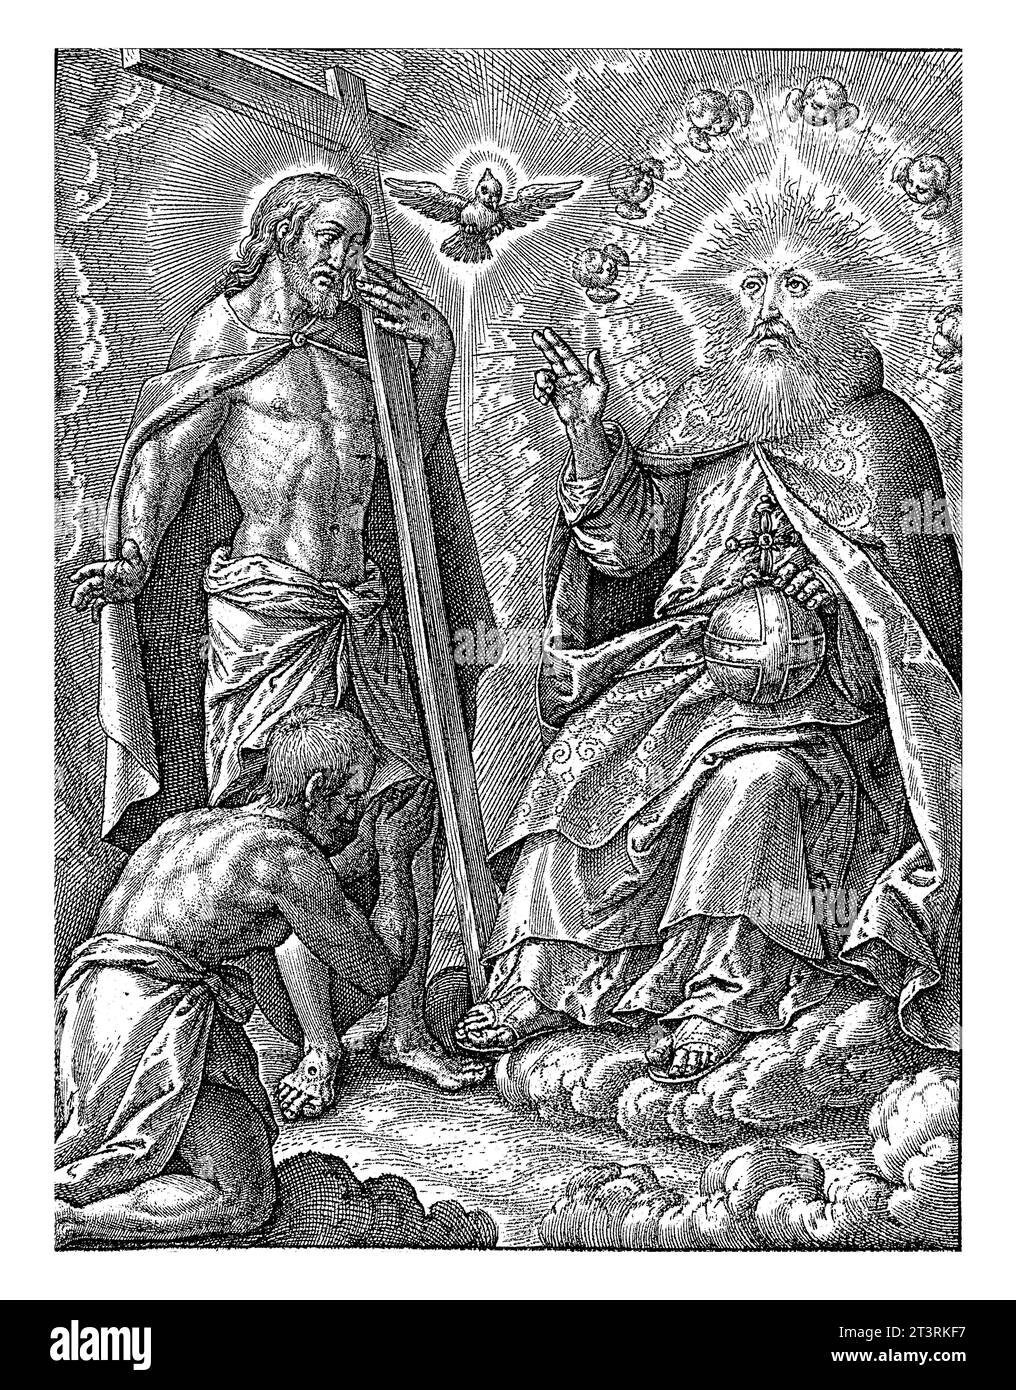 Heilige Dreifaltigkeit, Hieronymus Wierix, 1563 - vor 1619 kniet Ein Mann vor der Heiligen Dreifaltigkeit im Himmel. Gott, der Vater, segnet ihn. Sein Kopf ist umgeben Stockfoto